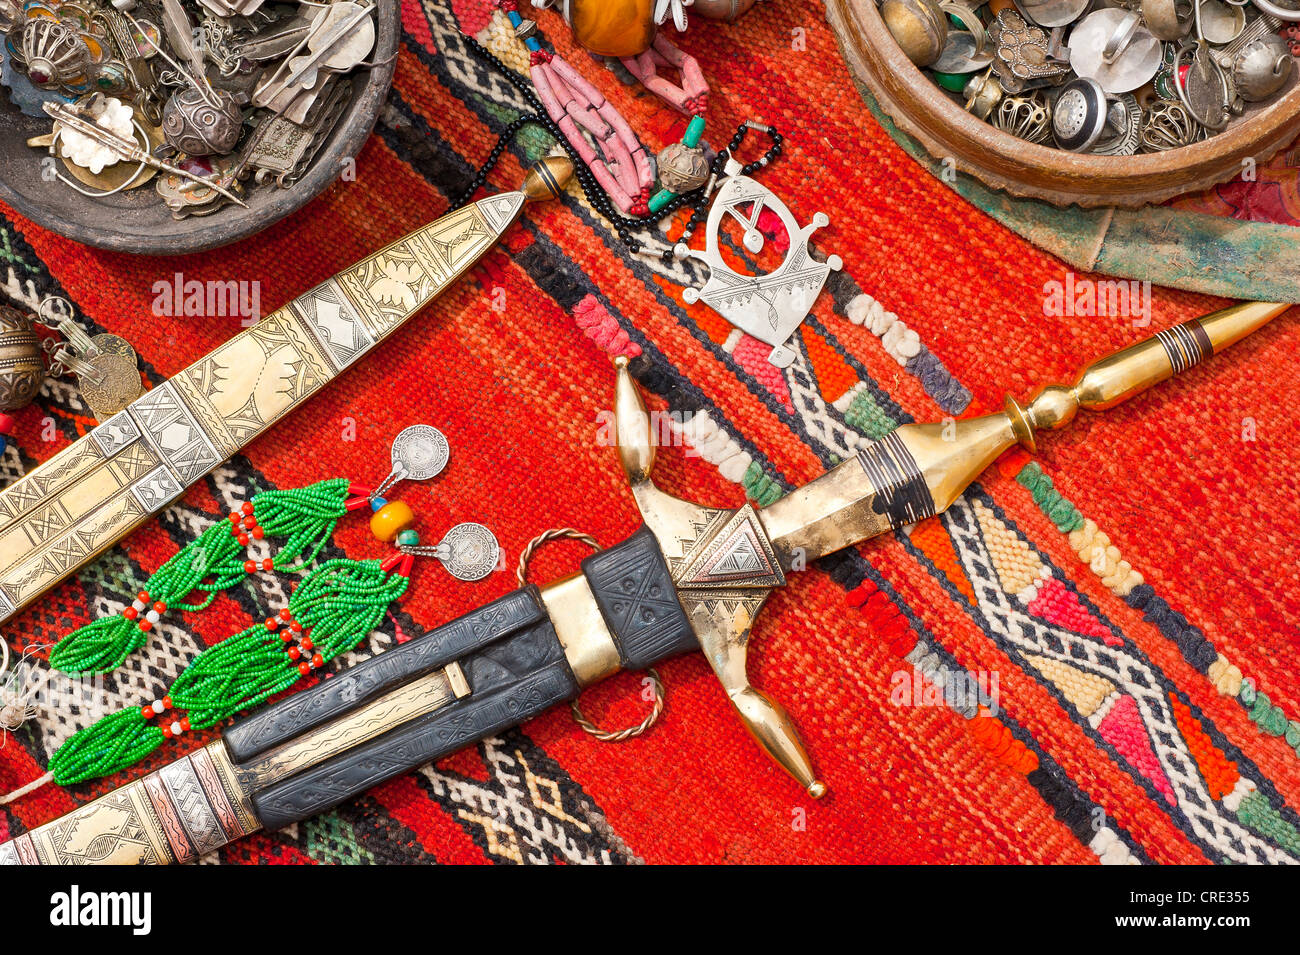 Orientalischer Schmuck und reich verzierten Touareg Messer verteilen sich auf einem Teppich, Souk, Basar, Marokko, Afrika Stockfoto